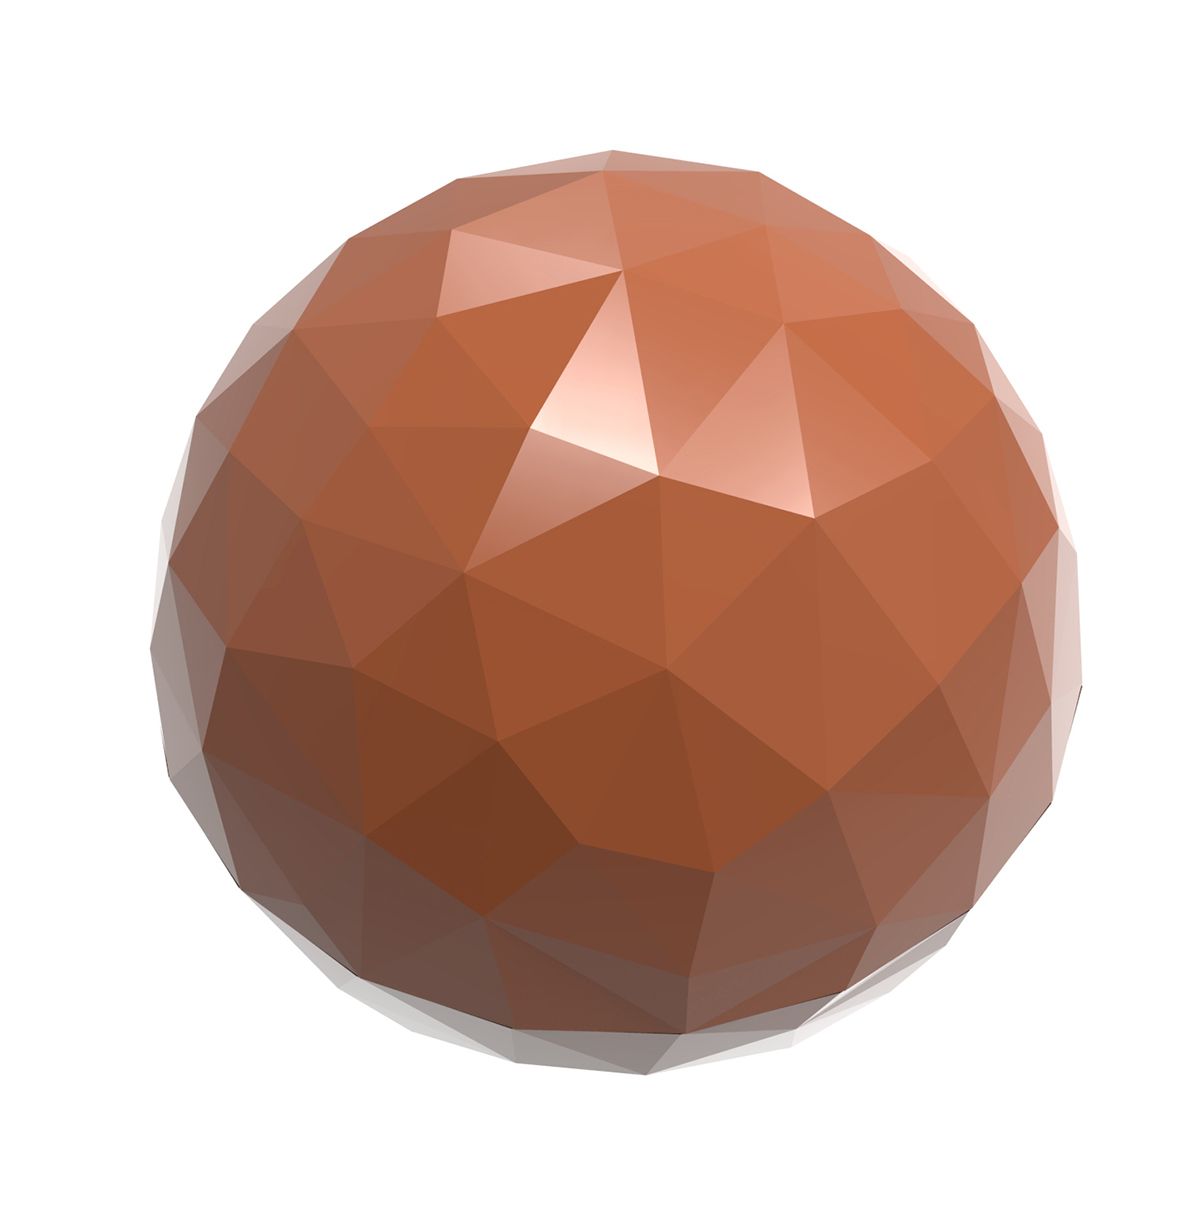 Billede af Professionel chokoladeform i polycarbonat - Half Sphere facet 2,5 cm CW1909